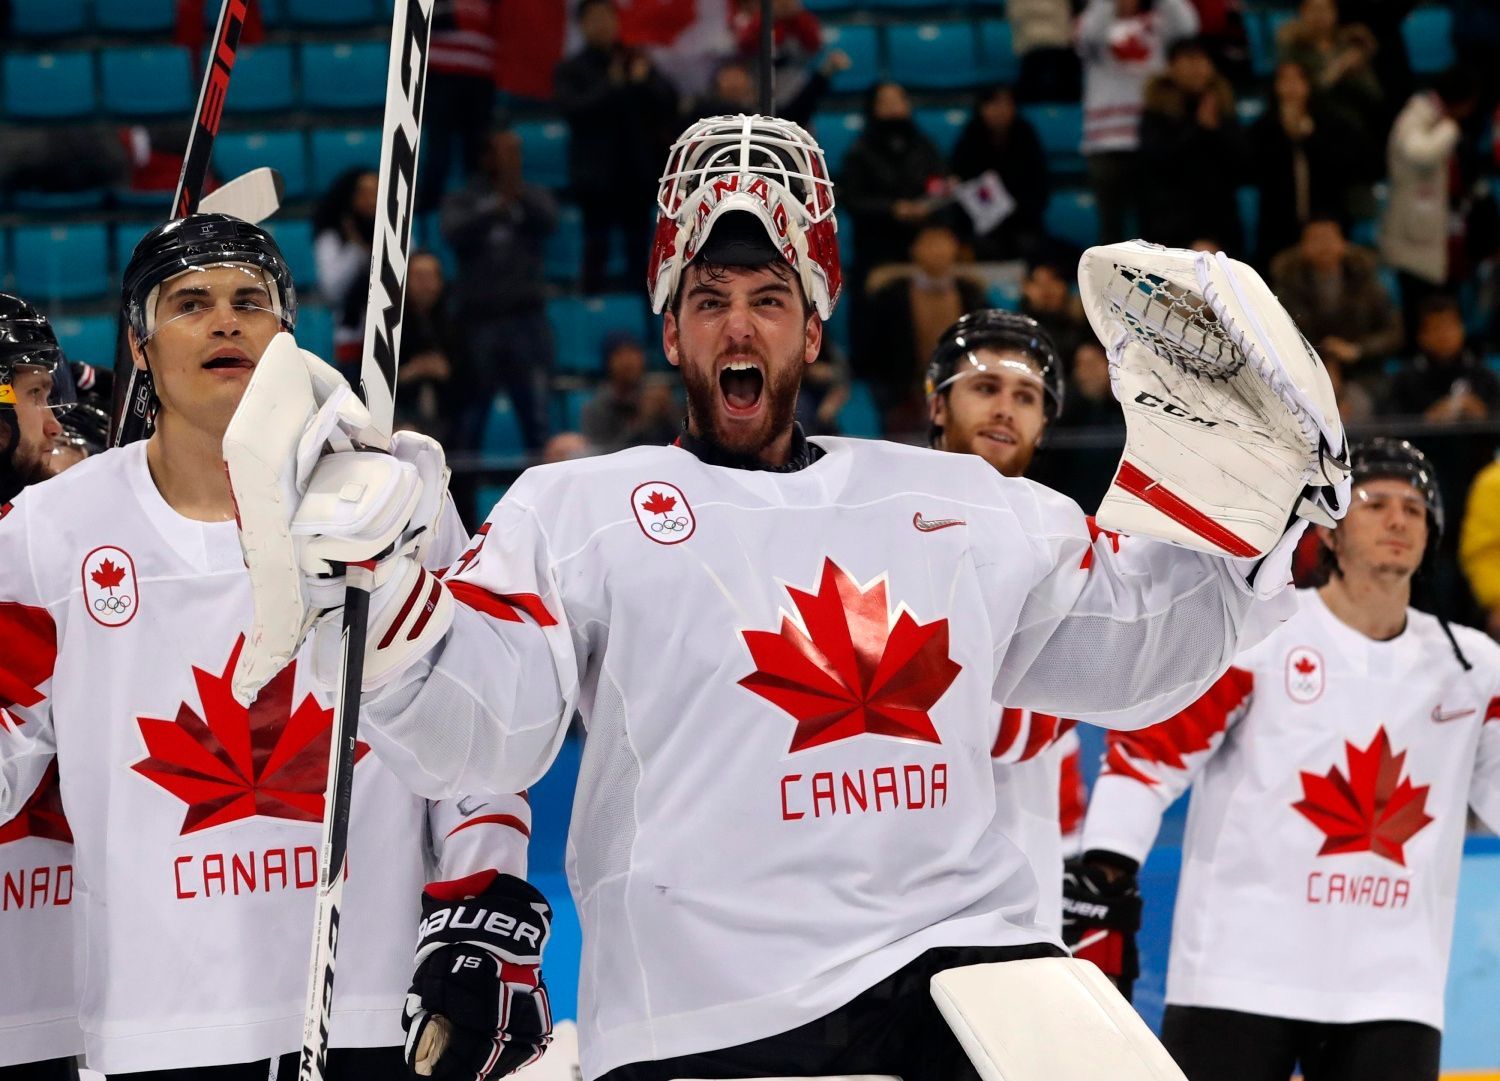 Kanaďané slaví bronz na ZOH 2018 po vítězství nad Českem - Kevin Poulin